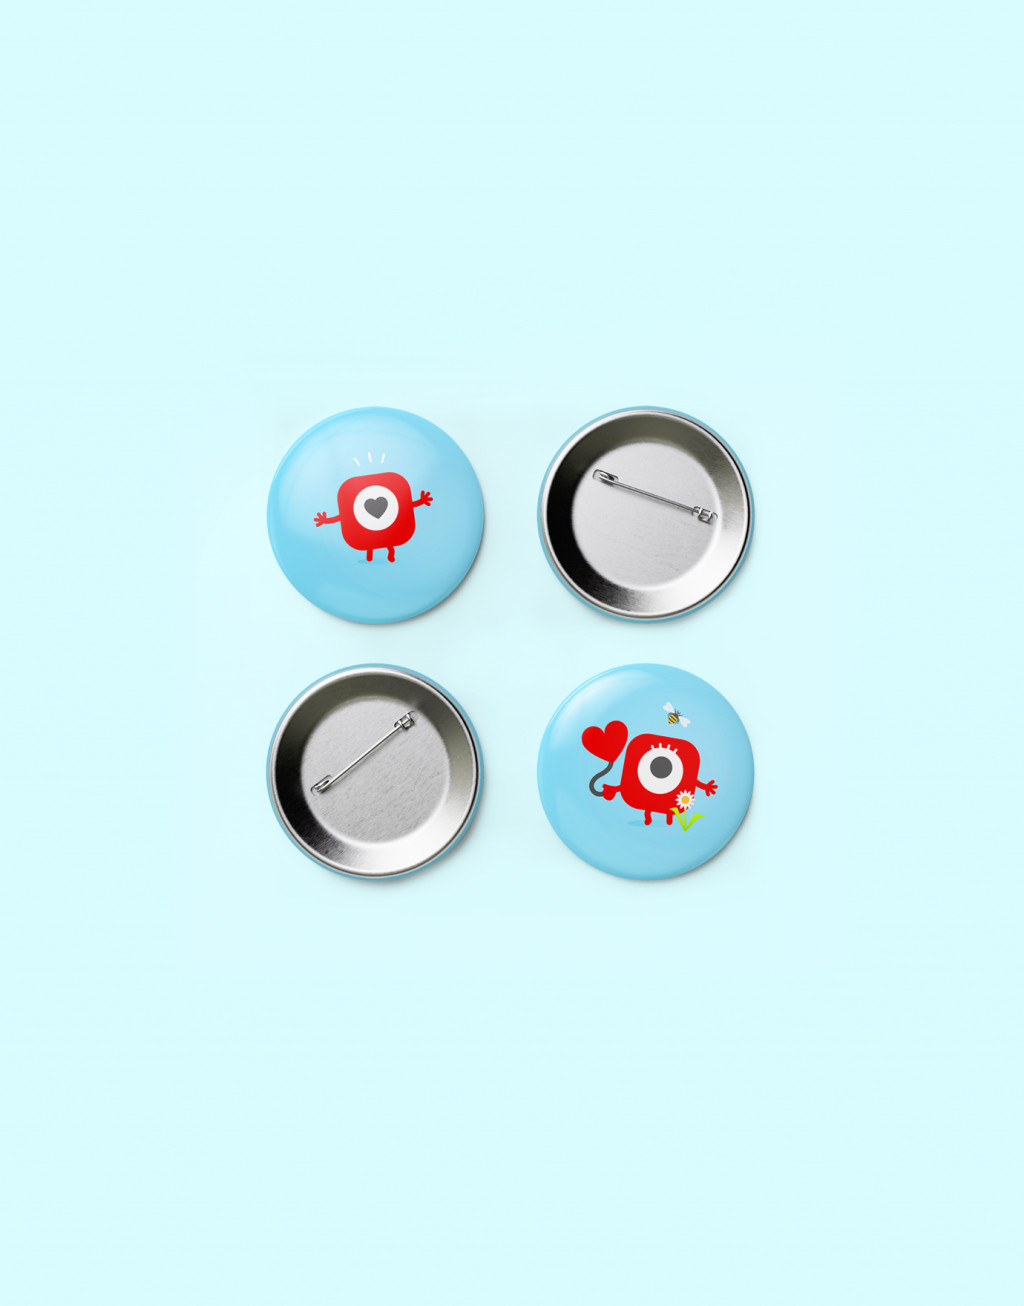 Ooigo buttons